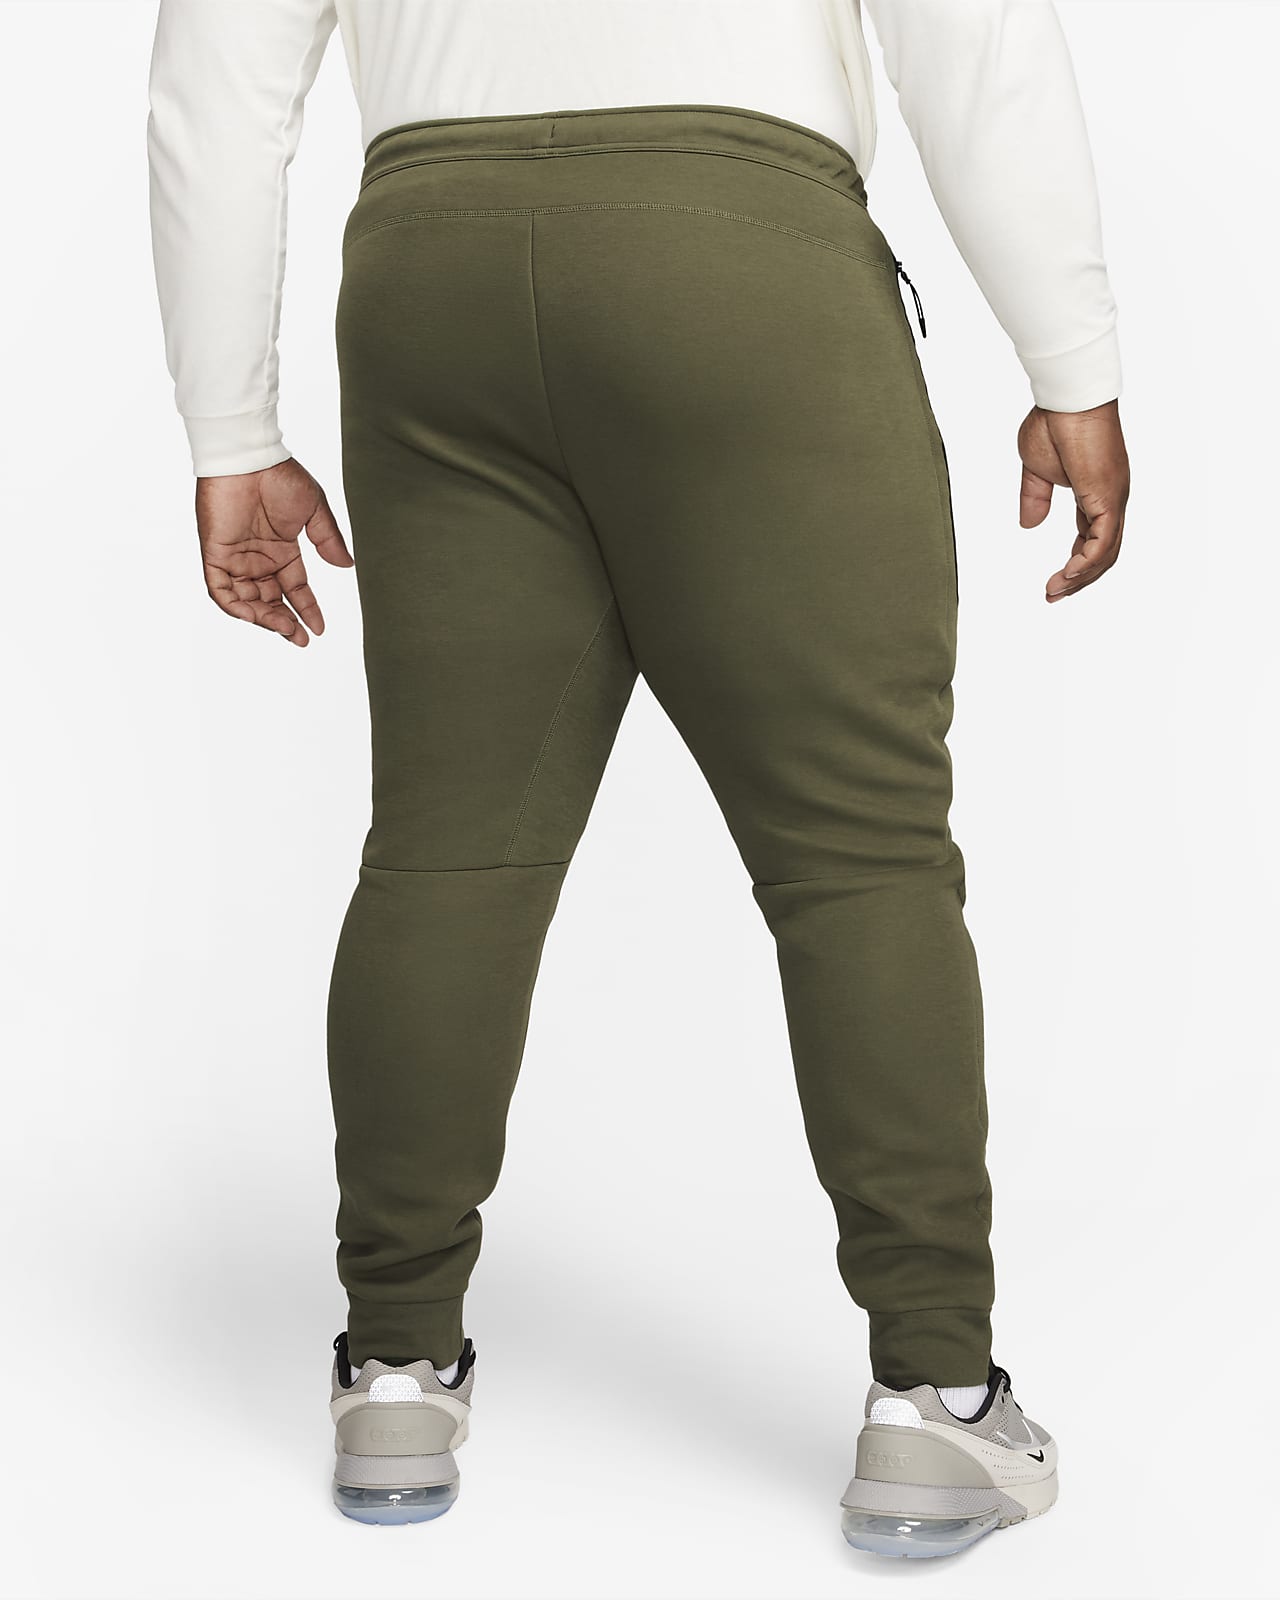 Pantalon de jogging Nike Sportswear Tech Fleece pour homme. Nike LU